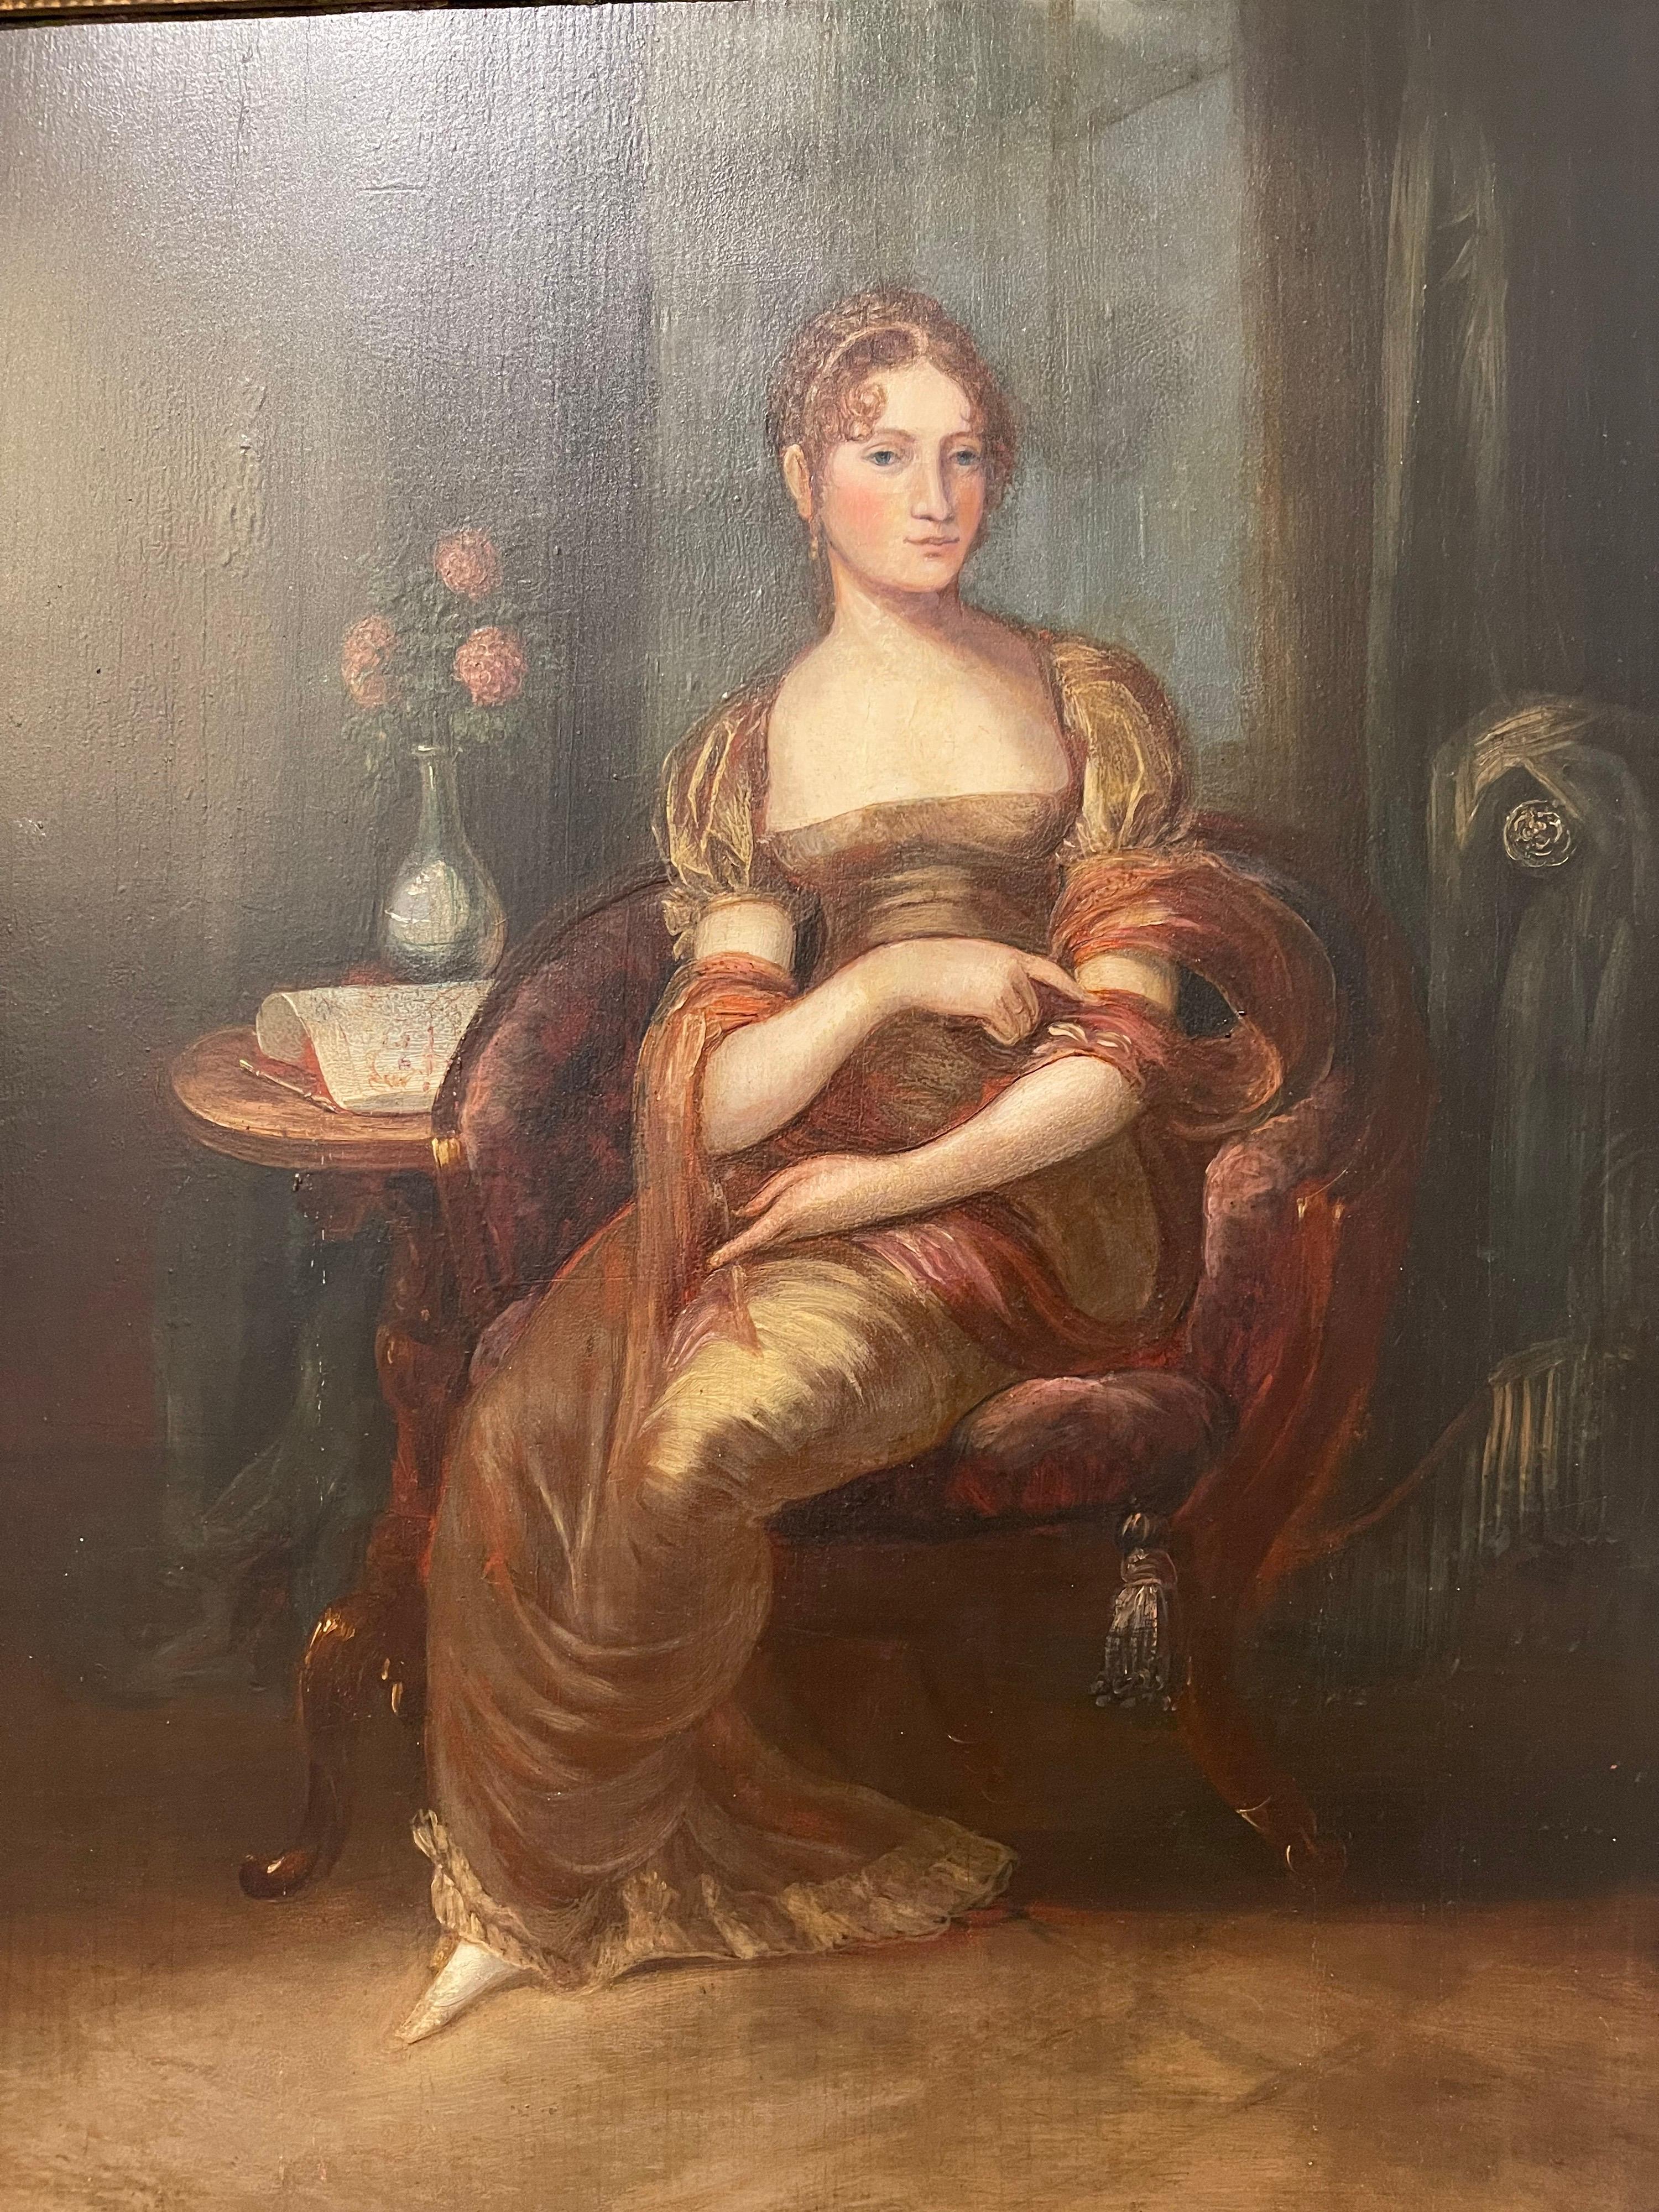 Paire de portraits anglais du début du 19e siècle de la période Regency. Portraits en pied d'un mari et d'une femme dans un cadre domestique, huile sur panneau de bois. Elles sont toutes deux encadrées dans leur cadre doré d'origine. Le dos des